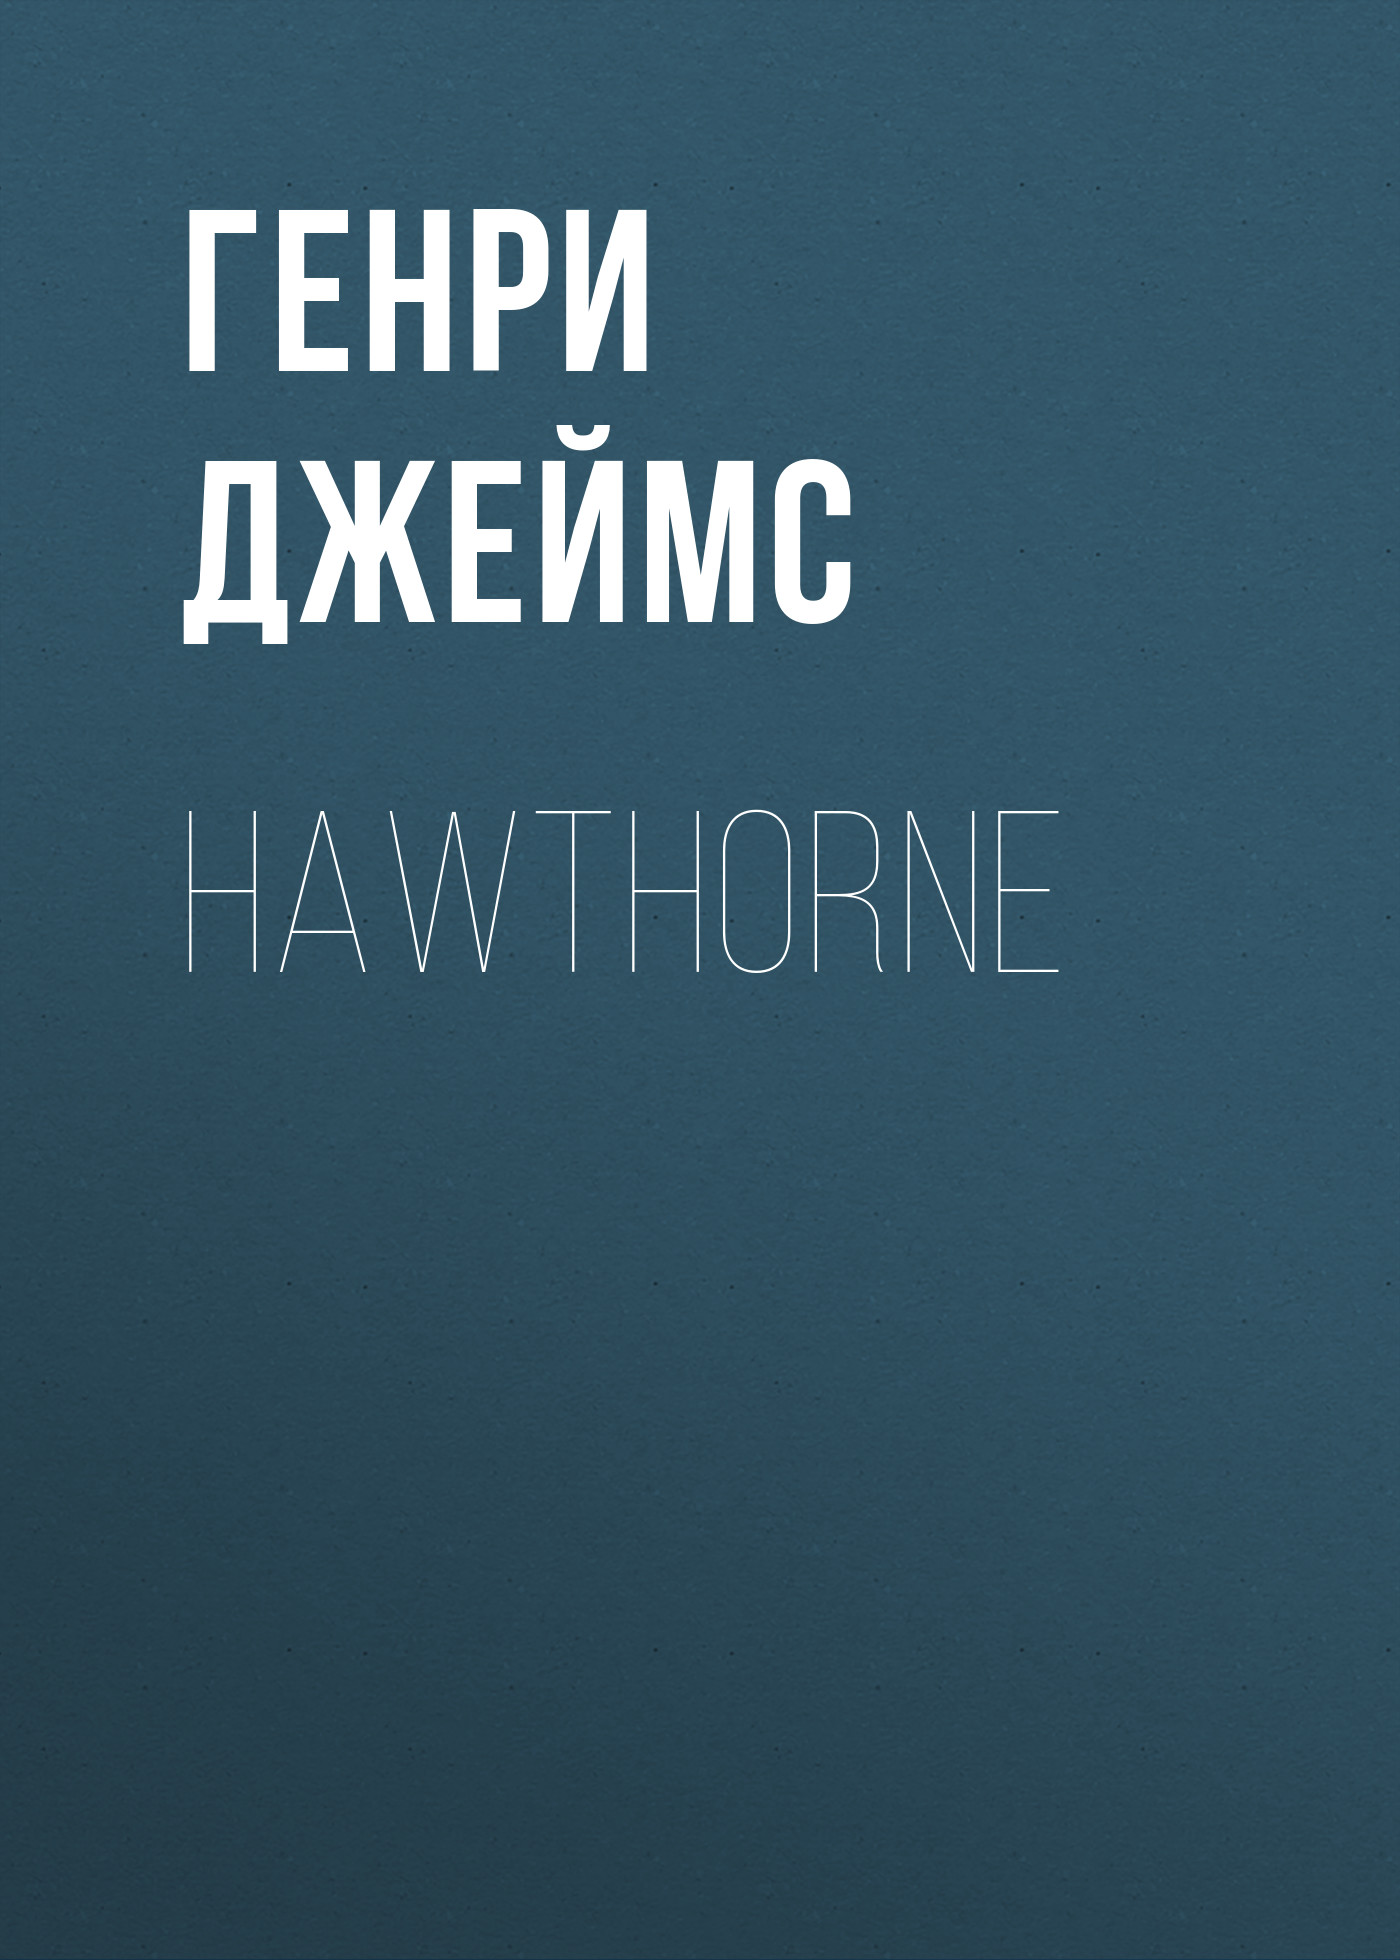 Книга Hawthorne из серии , созданная Генри Джеймс, может относится к жанру Биографии и Мемуары, Литература 19 века, Зарубежная старинная литература. Стоимость электронной книги Hawthorne с идентификатором 34842734 составляет 0 руб.